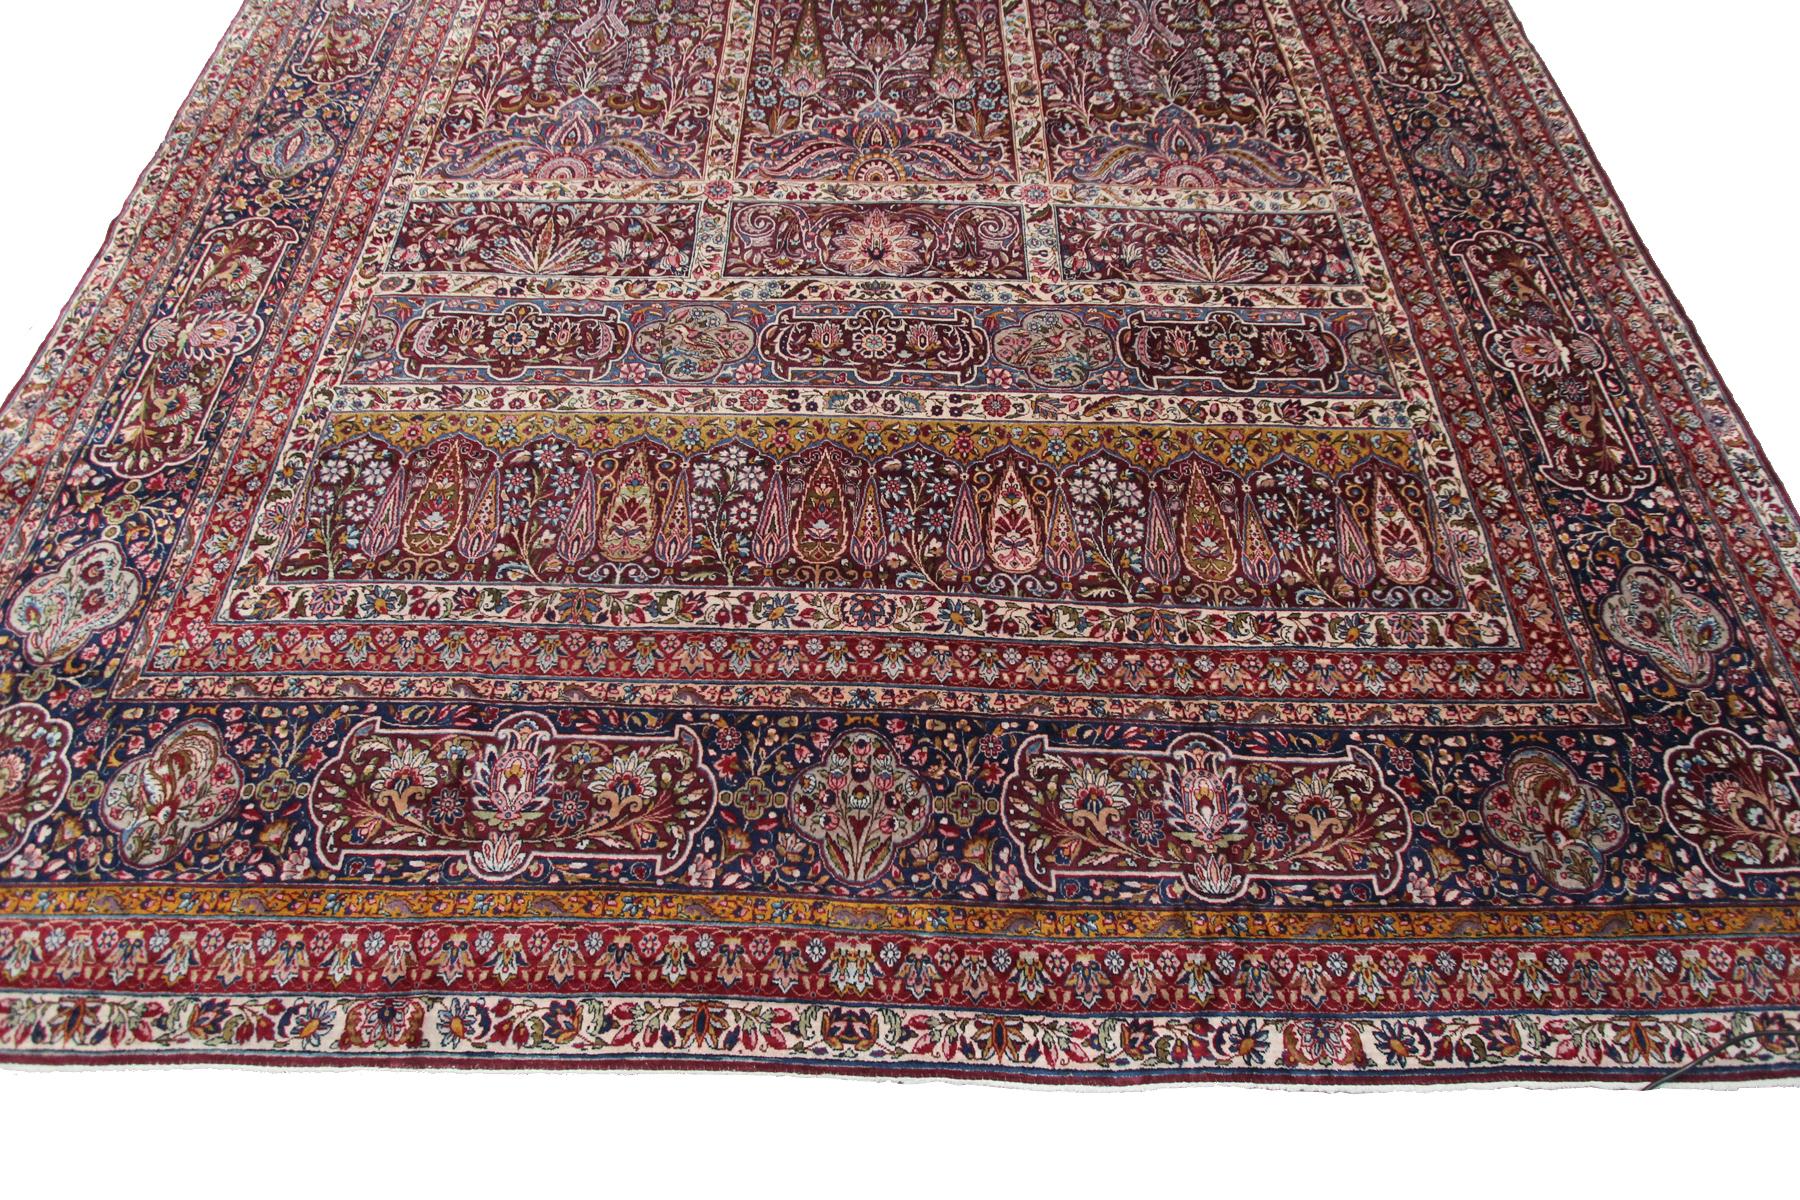 Oversized Antique Persian Rug Kermanshah Rug Lavar Rug Kork Palace 1890 For Sale 5